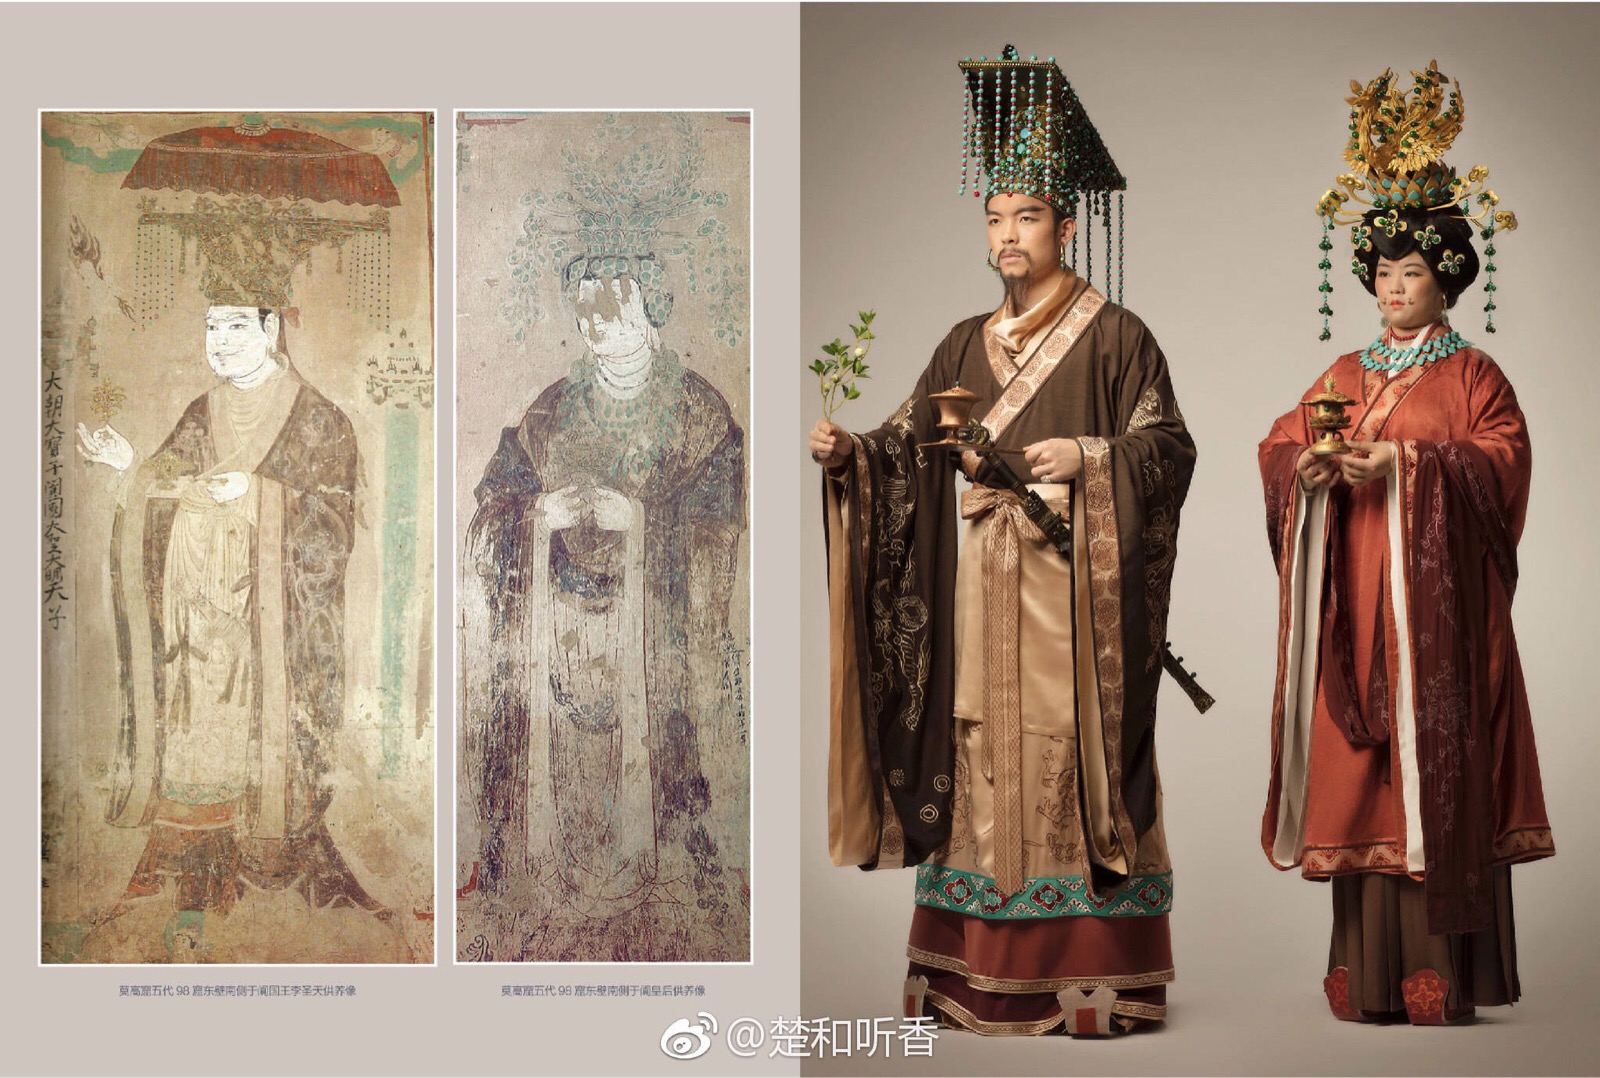 如回鹘髻,金凤冠,回鹘装,此类流行于中晚唐社会的回鹘风尚,研究起来